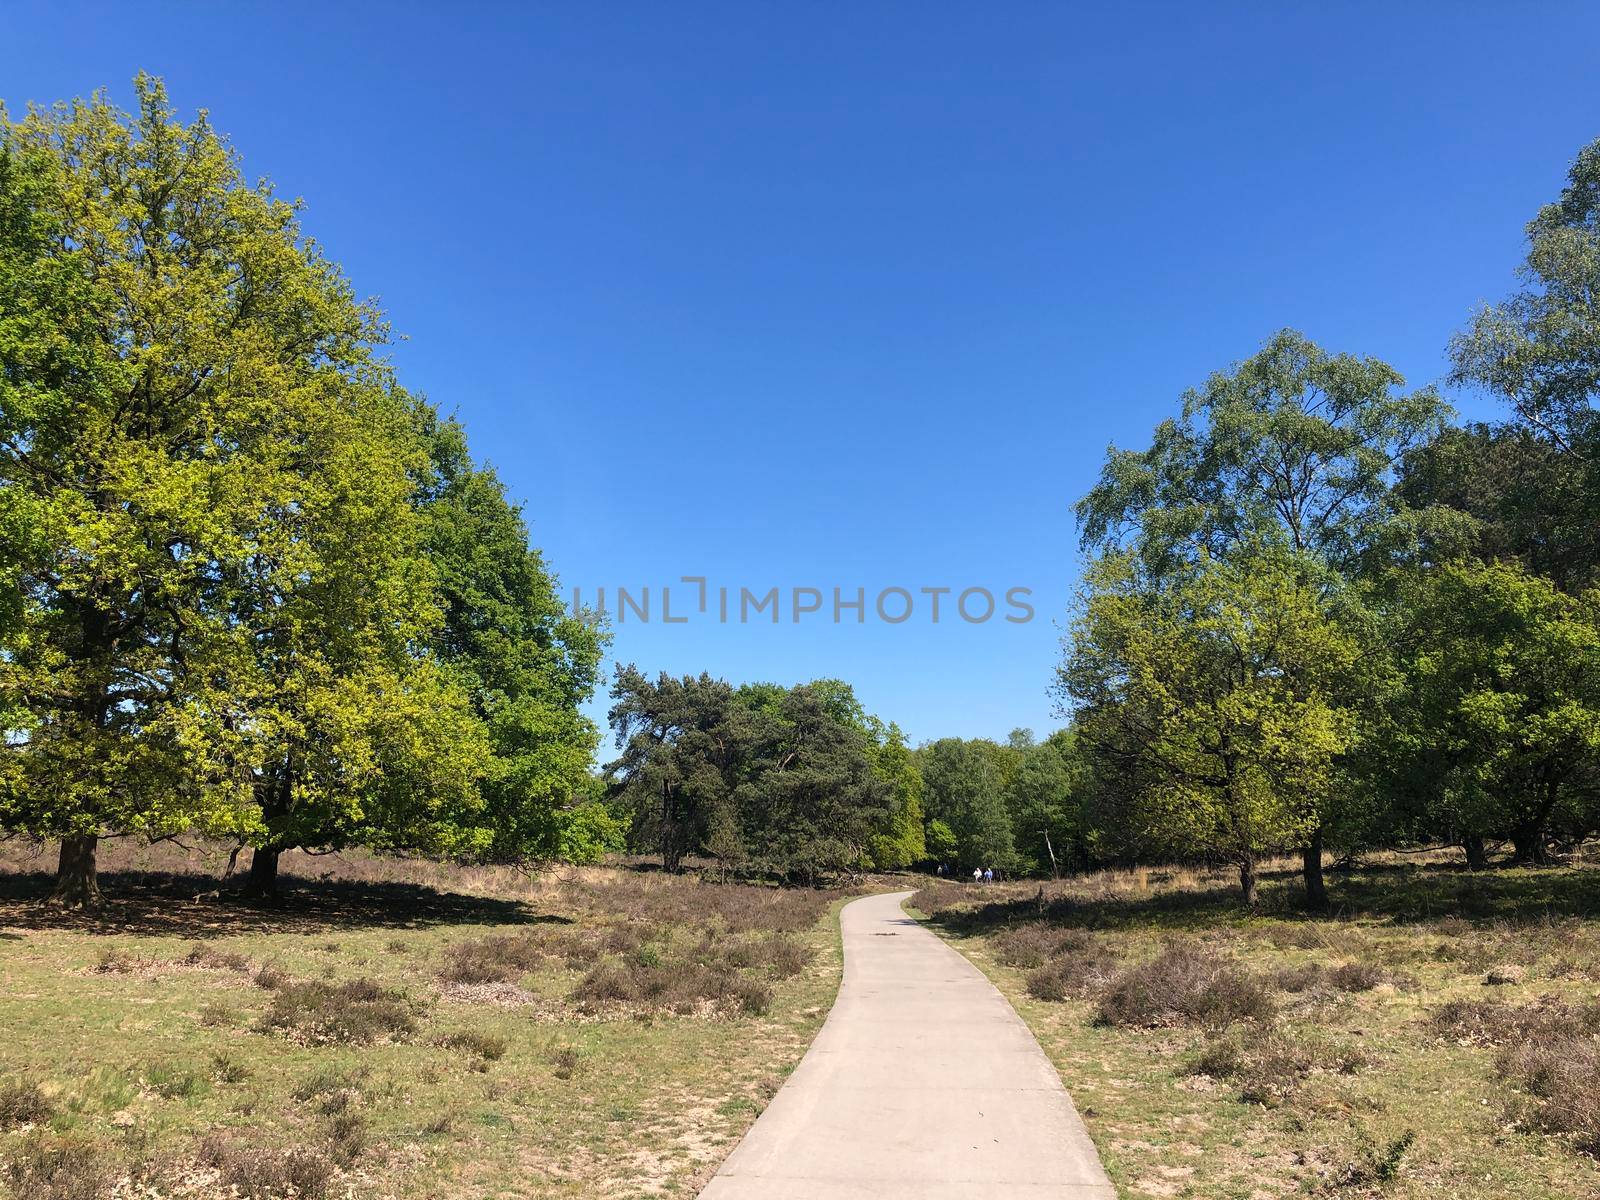 Path through National Park De Hoge Veluwe in Gelderland by traveltelly